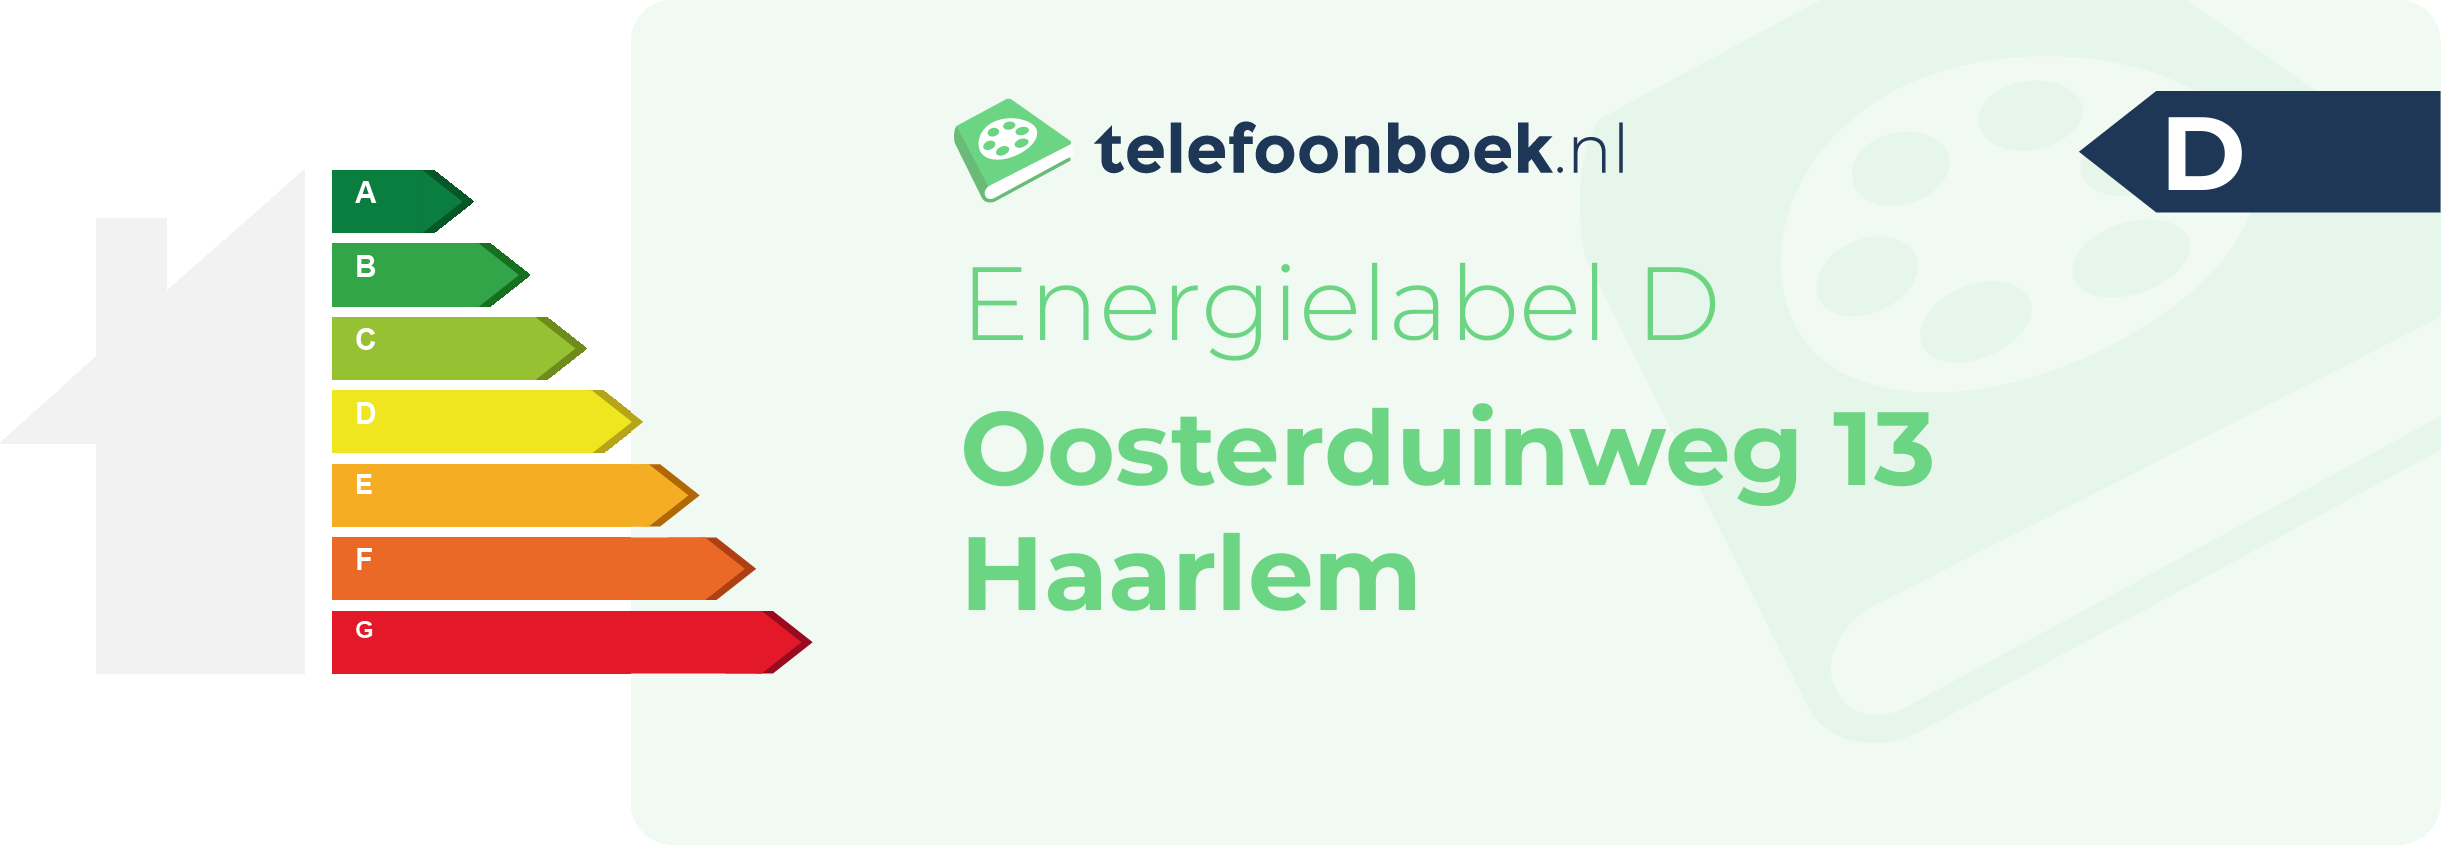 Energielabel Oosterduinweg 13 Haarlem